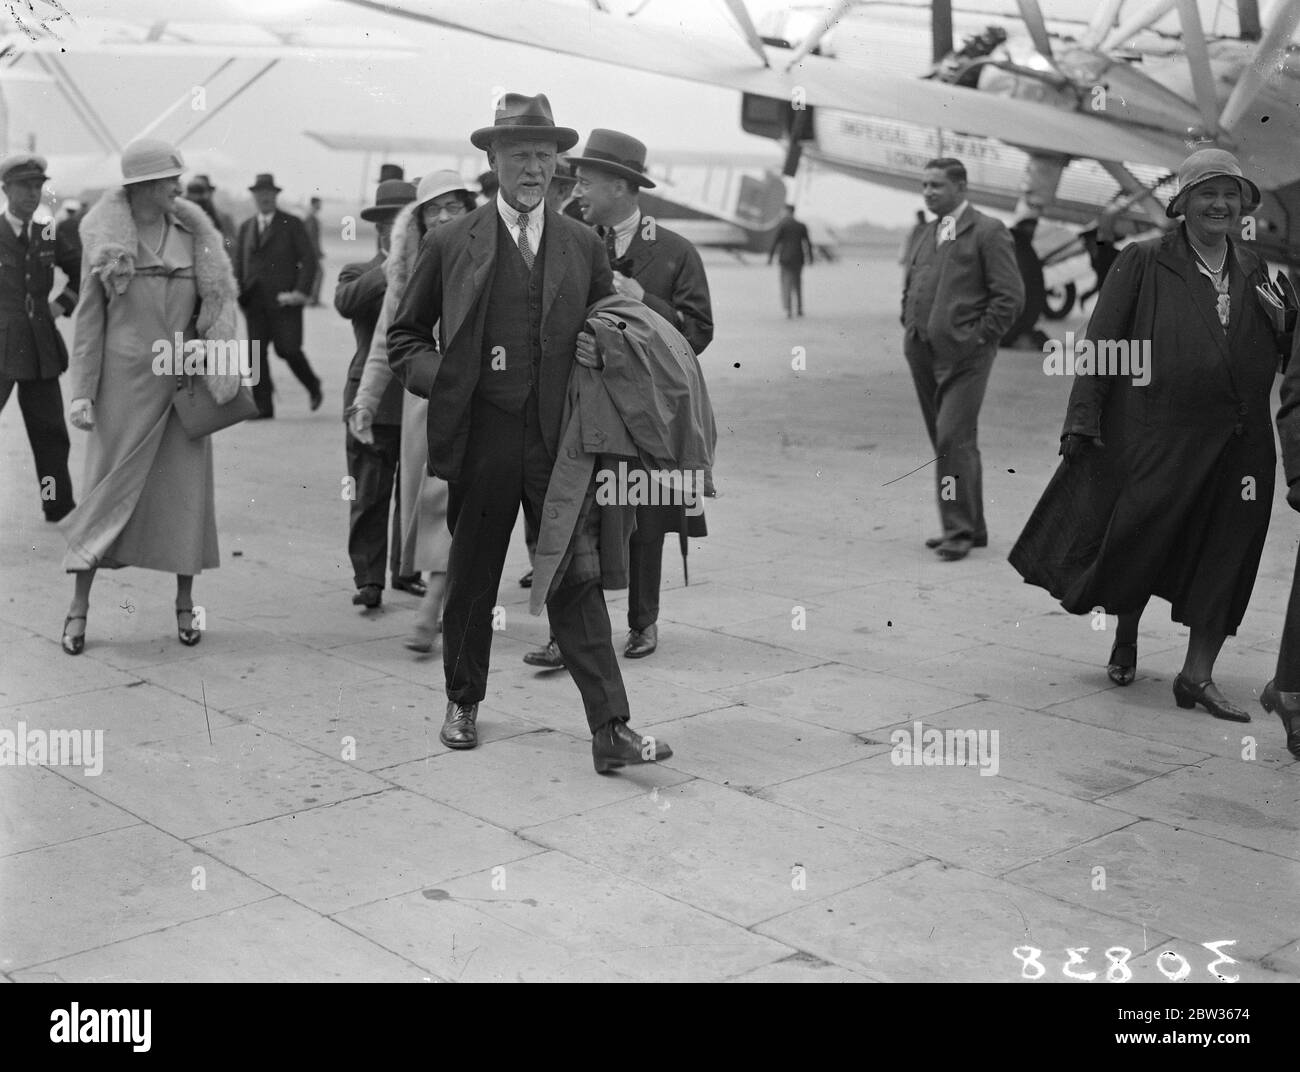 Le général Smuts arrive par avion pour la Conférence économique mondiale . Le général Smuts , chef de la délégation sud-africaine à la Conférence économique mondiale , est arrivé à l'aérodrome de Croydon après avoir effectué le vol de l'ensemble de la jounee depuis le Cap . Le général Smuts souriant avec joie alors qu'il a été accueilli à son arrivée à l'aérodrome de Croydon . 11 juin 1933 Banque D'Images